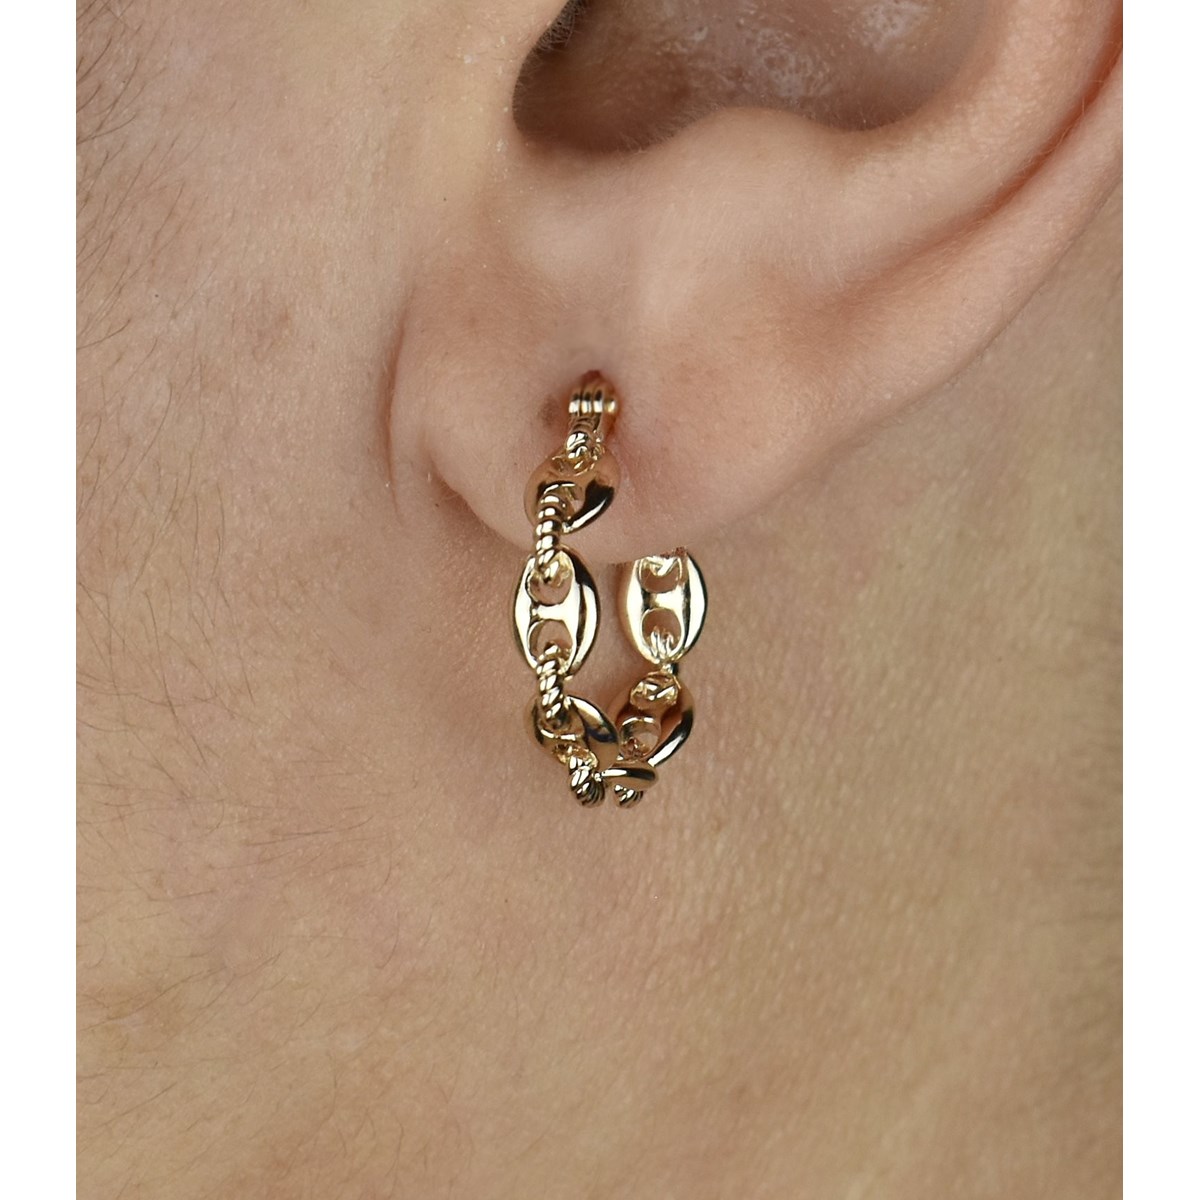 Boucles d'oreilles Créoles suite de grain de café reliés par un anneau effet tressé Plaqué or 750 3 microns - vue 3